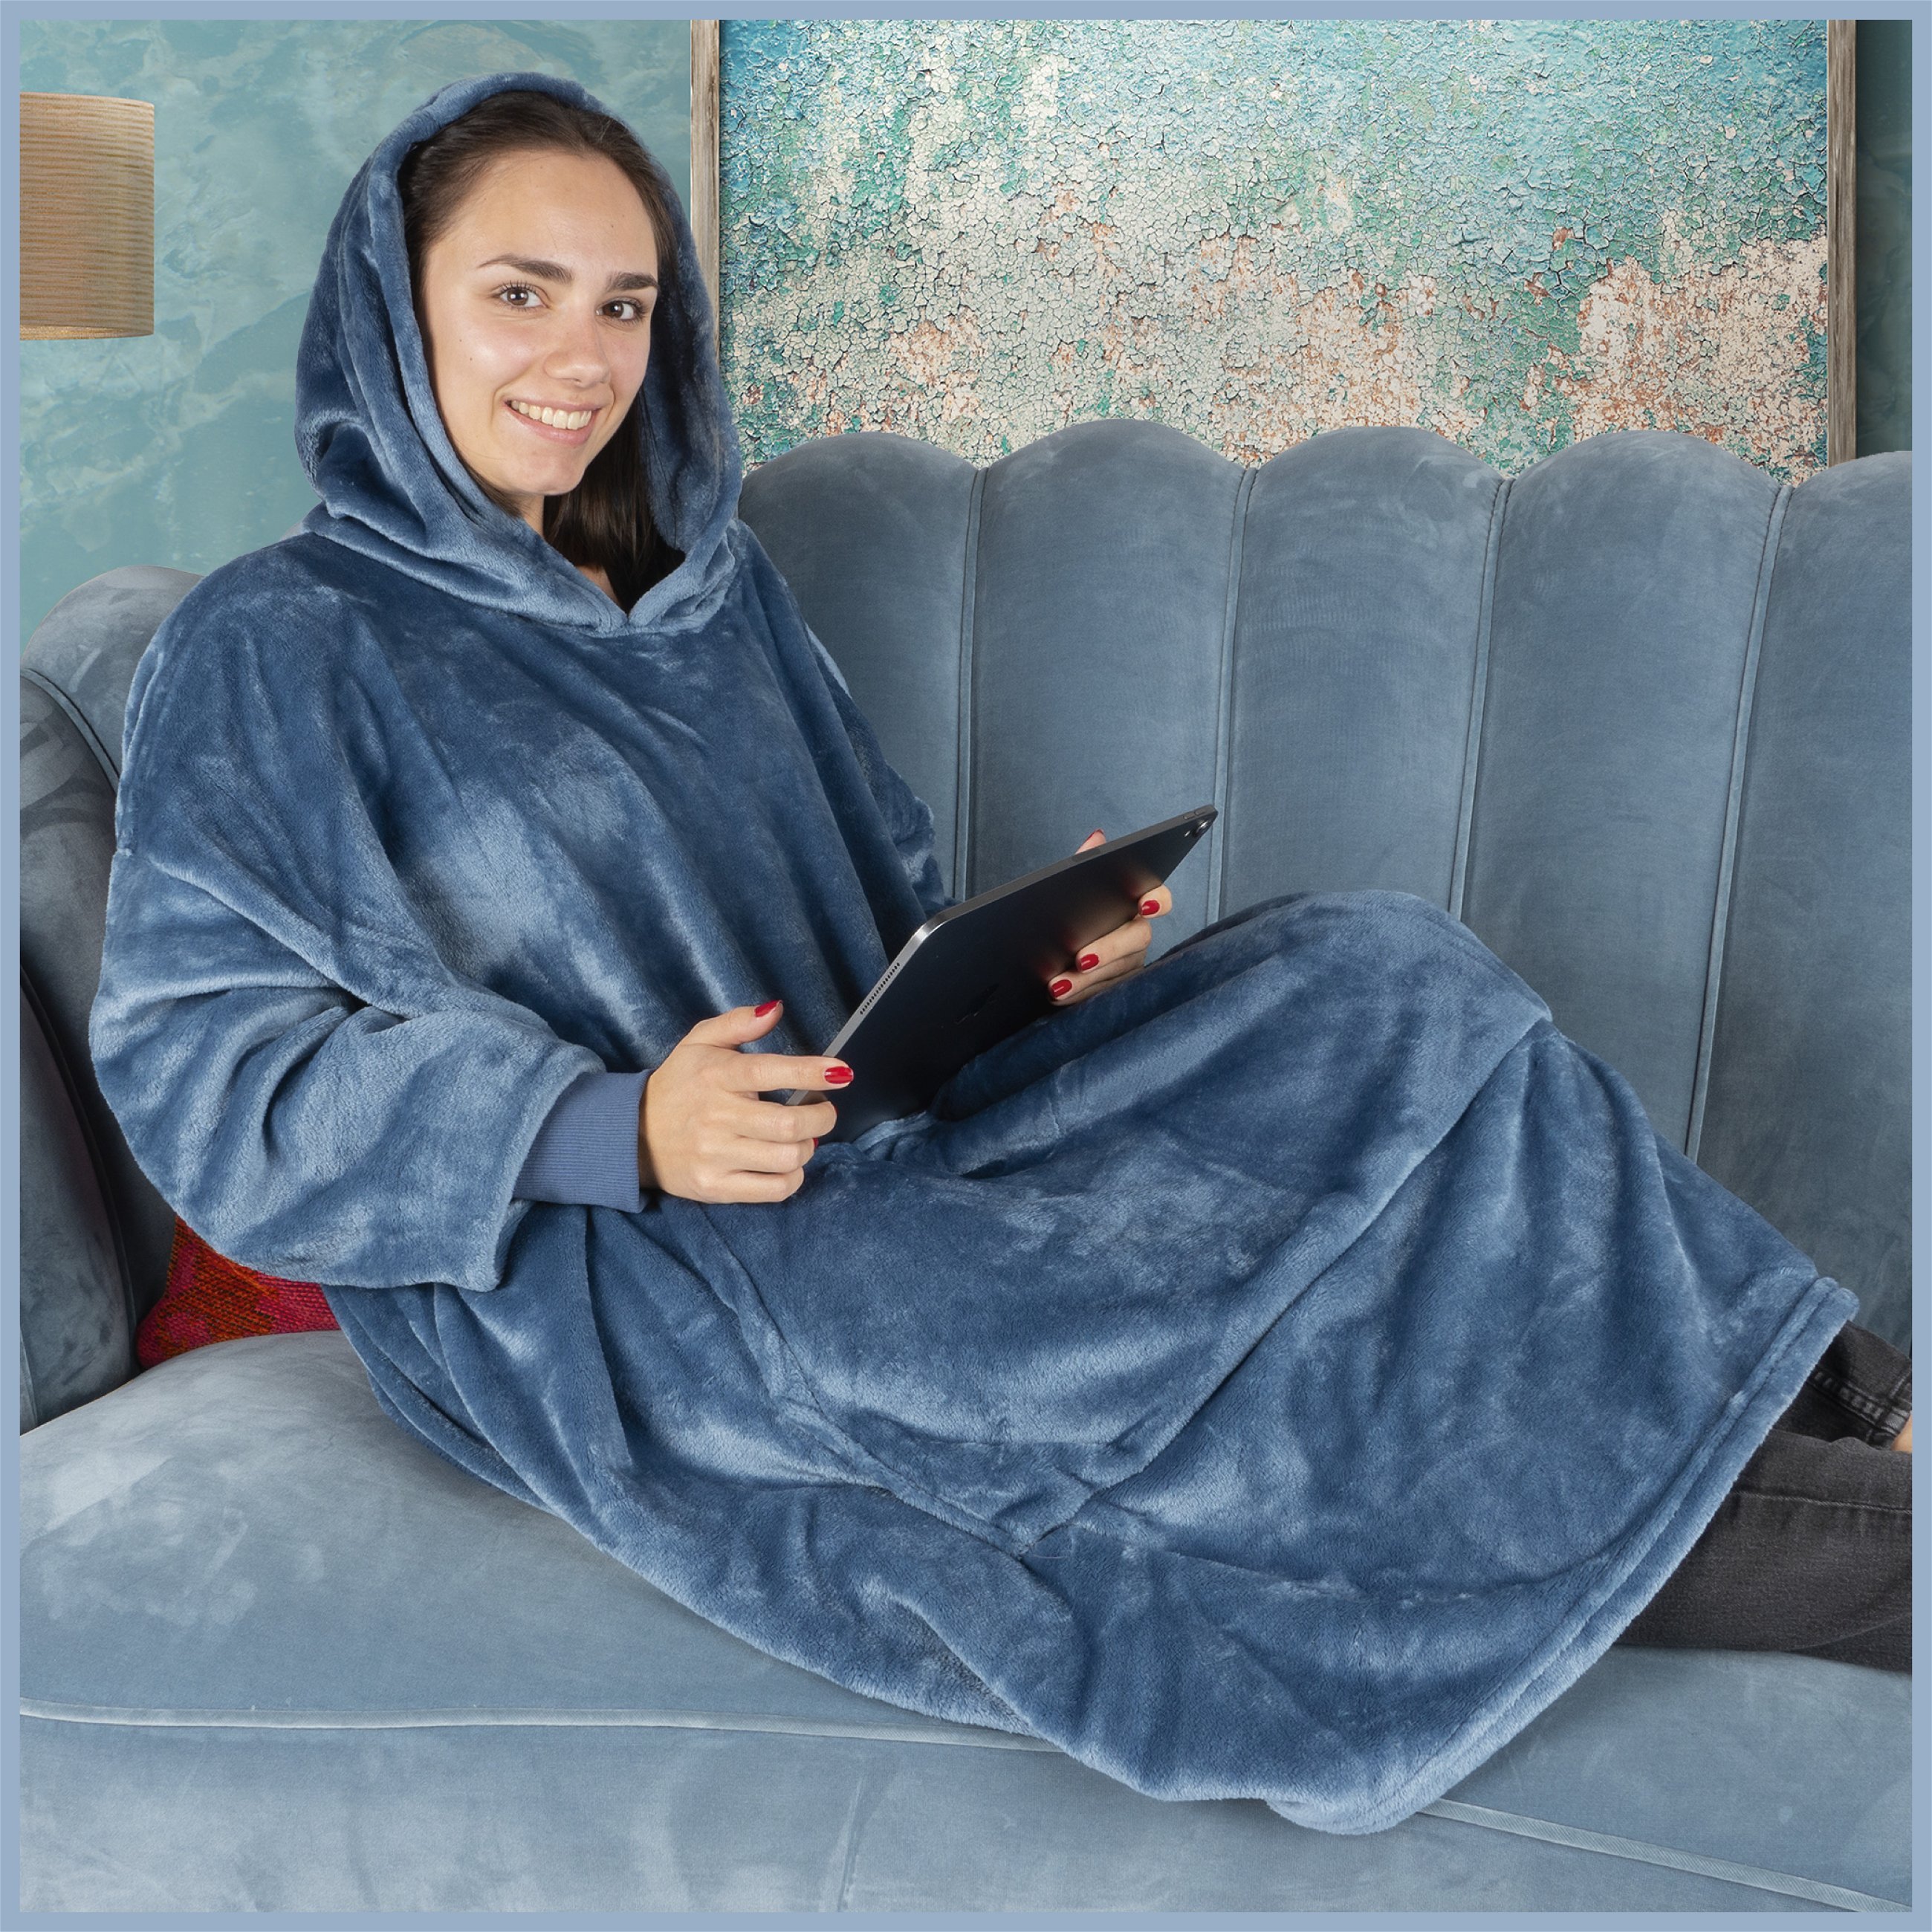 Maglione Snuggle, coperta con cappuccio Snuggle, felpa con cappuccio oversize donna, felpa con cappuccio uomo, felpa con cappuccio 104x102 cm blu